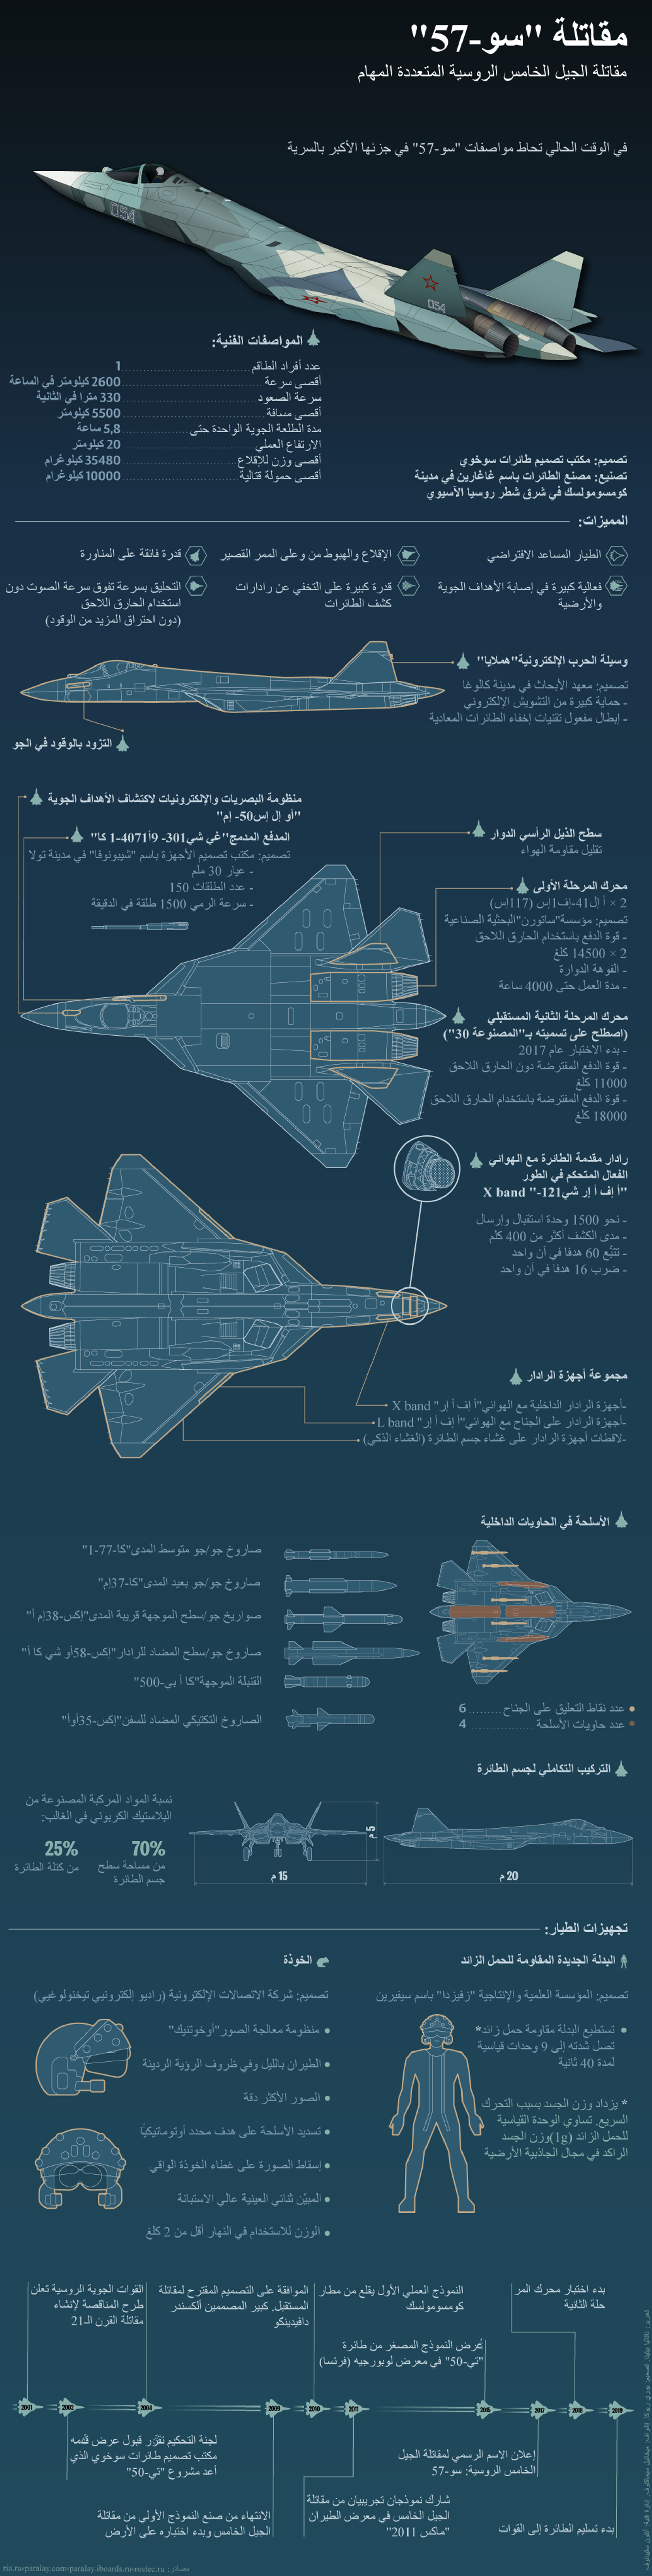 على خلفية مشاكل إف-35 الأمريكية... سو-57 الروسية توسع إمكانياتها - سبوتنيك عربي, 1920, 05.03.2021